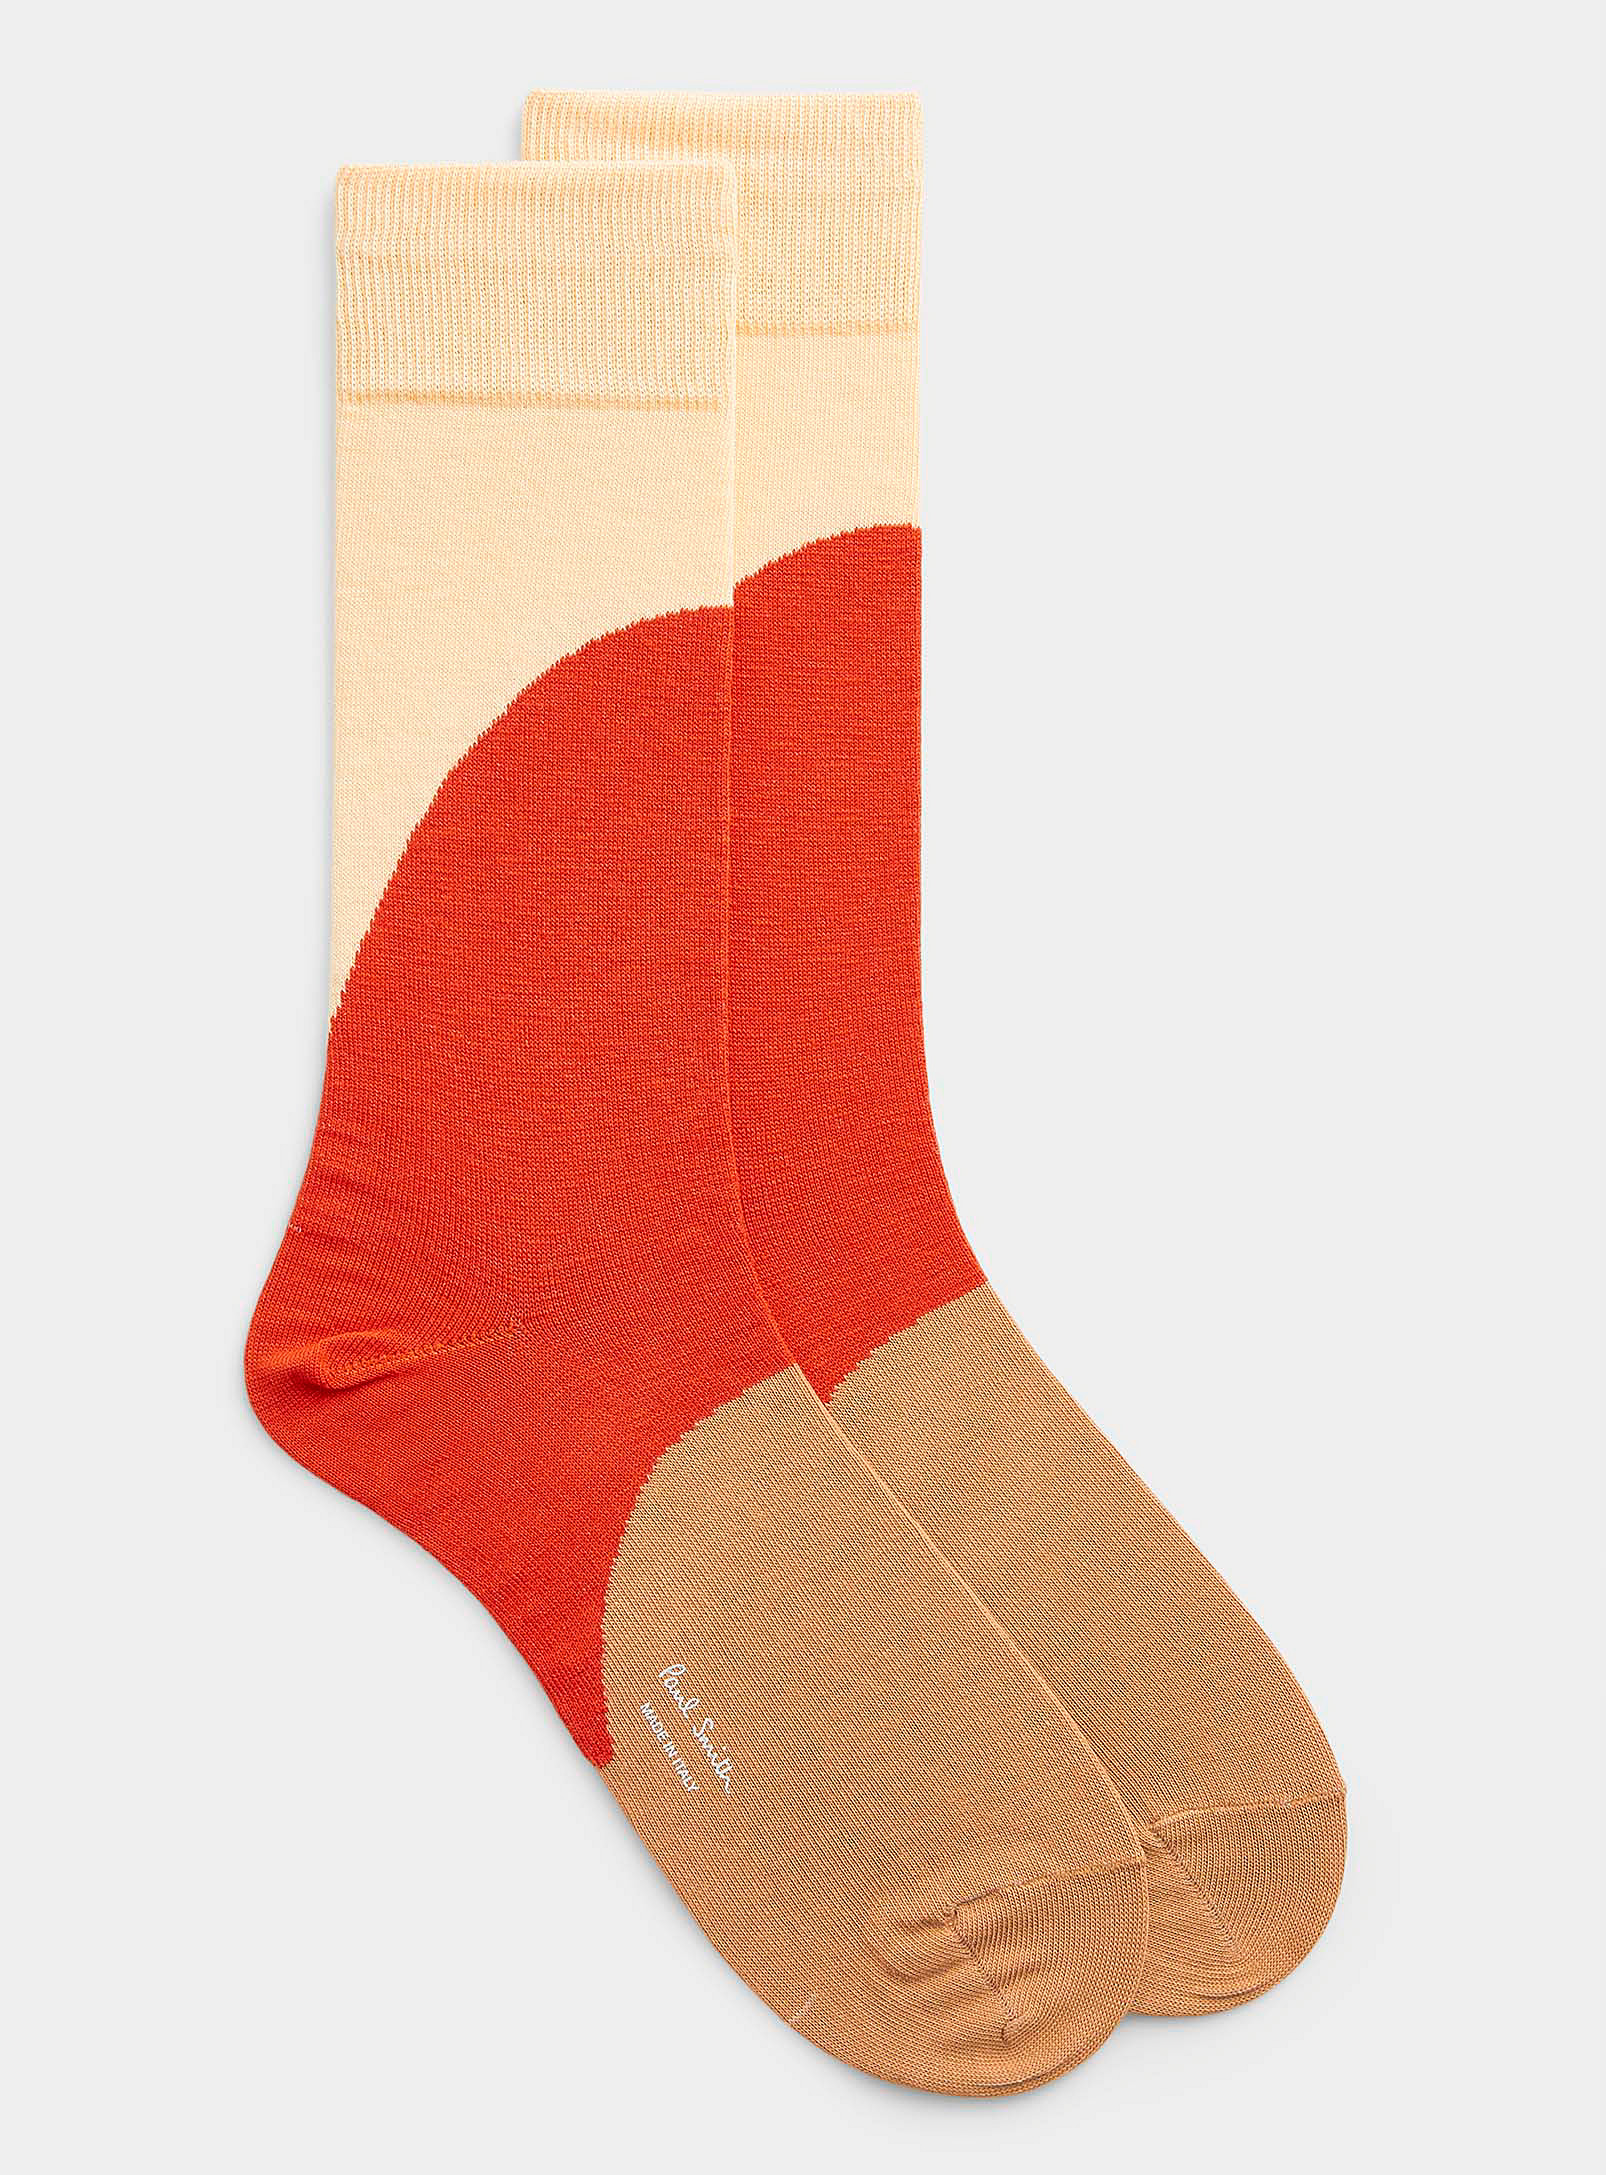 Paul Smith - Men's Cream-and-orange sock